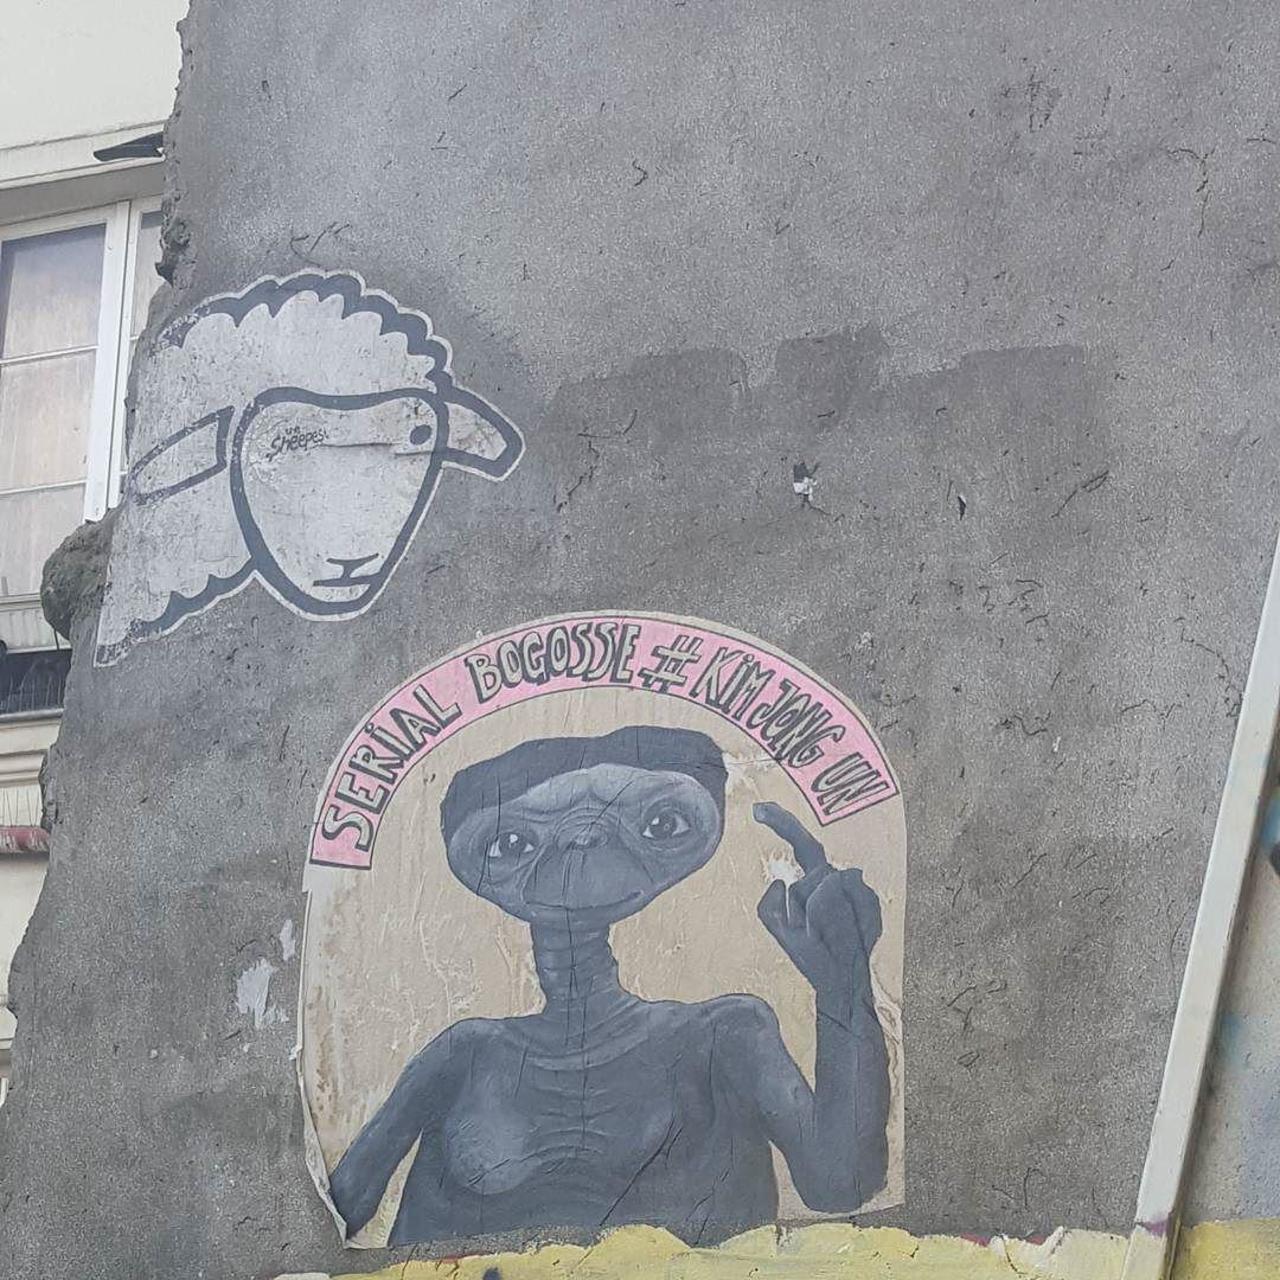 #Paris #graffiti photo by @jdewey67 http://ift.tt/1LFGS3v #StreetArt http://t.co/diXKbeVD2S